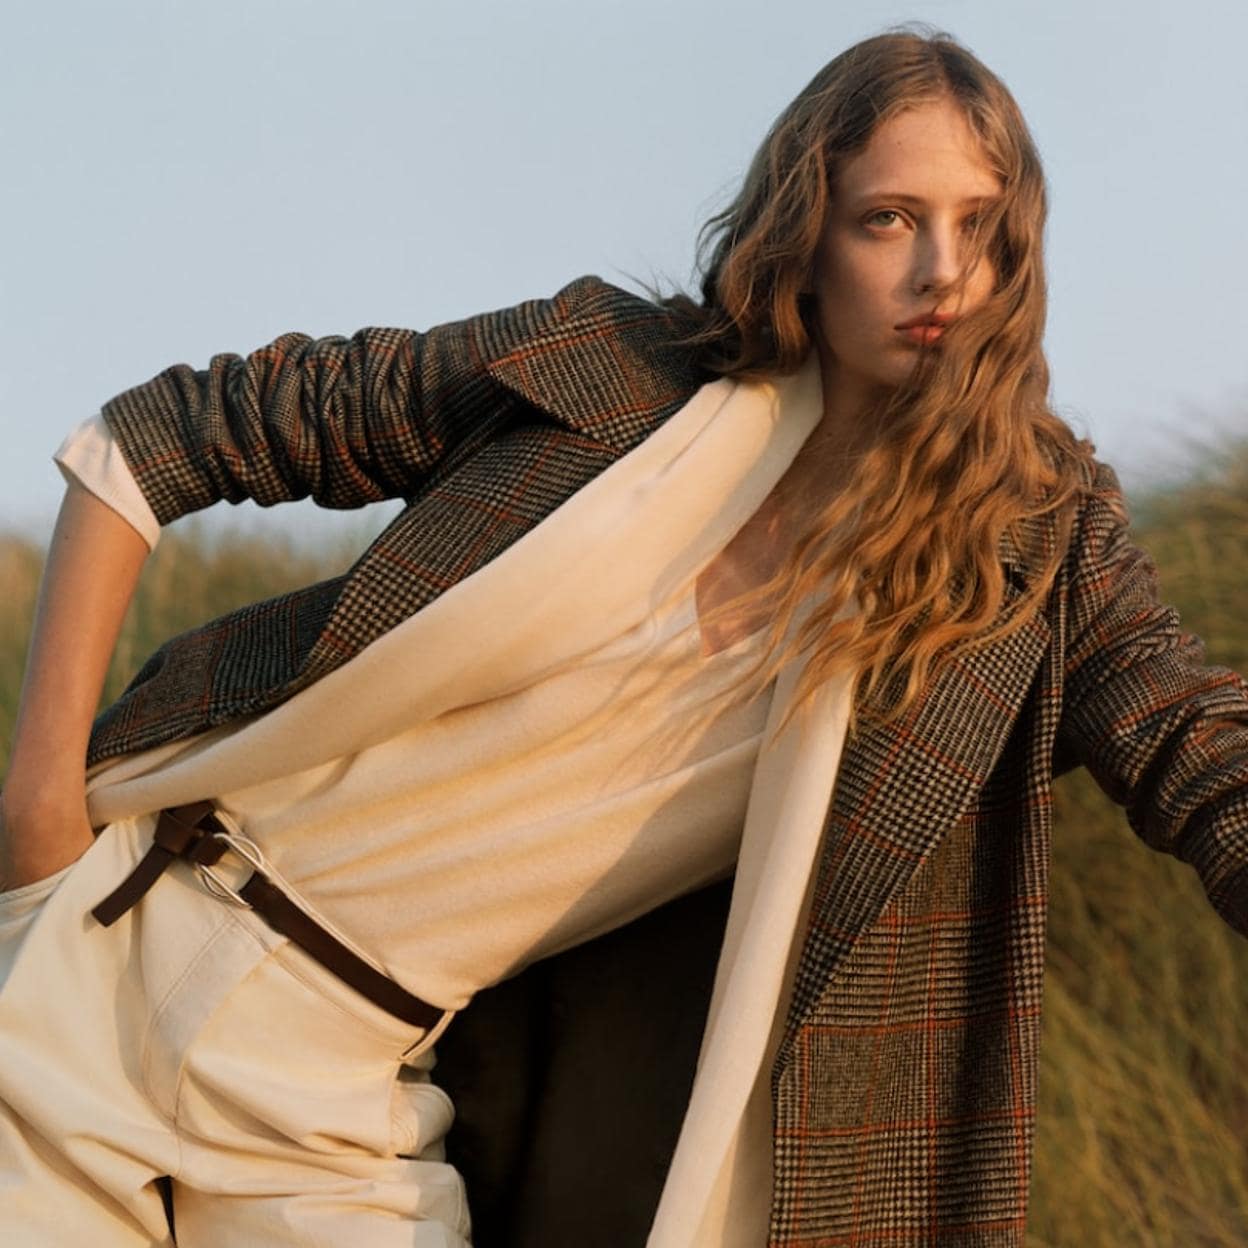 El abrigo de cuadros de Massimo Dutti que es estilo y que nos hace tener (muchas) ganas de que se acabe el verano | Mujer Hoy